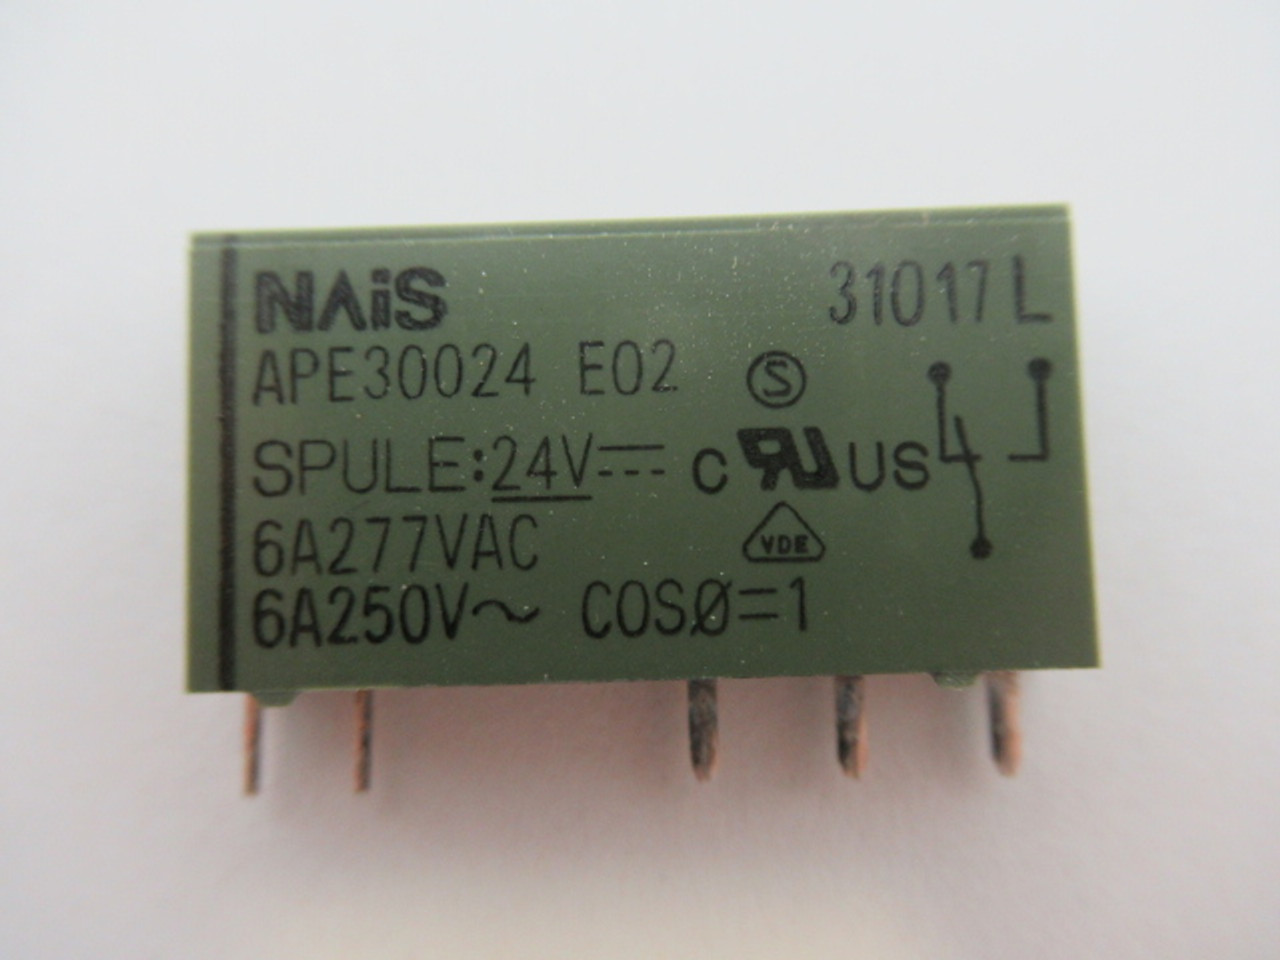 Nais APE30024-E02 Miniature Power Relay 24VDC Coil 6A 277VAC USED